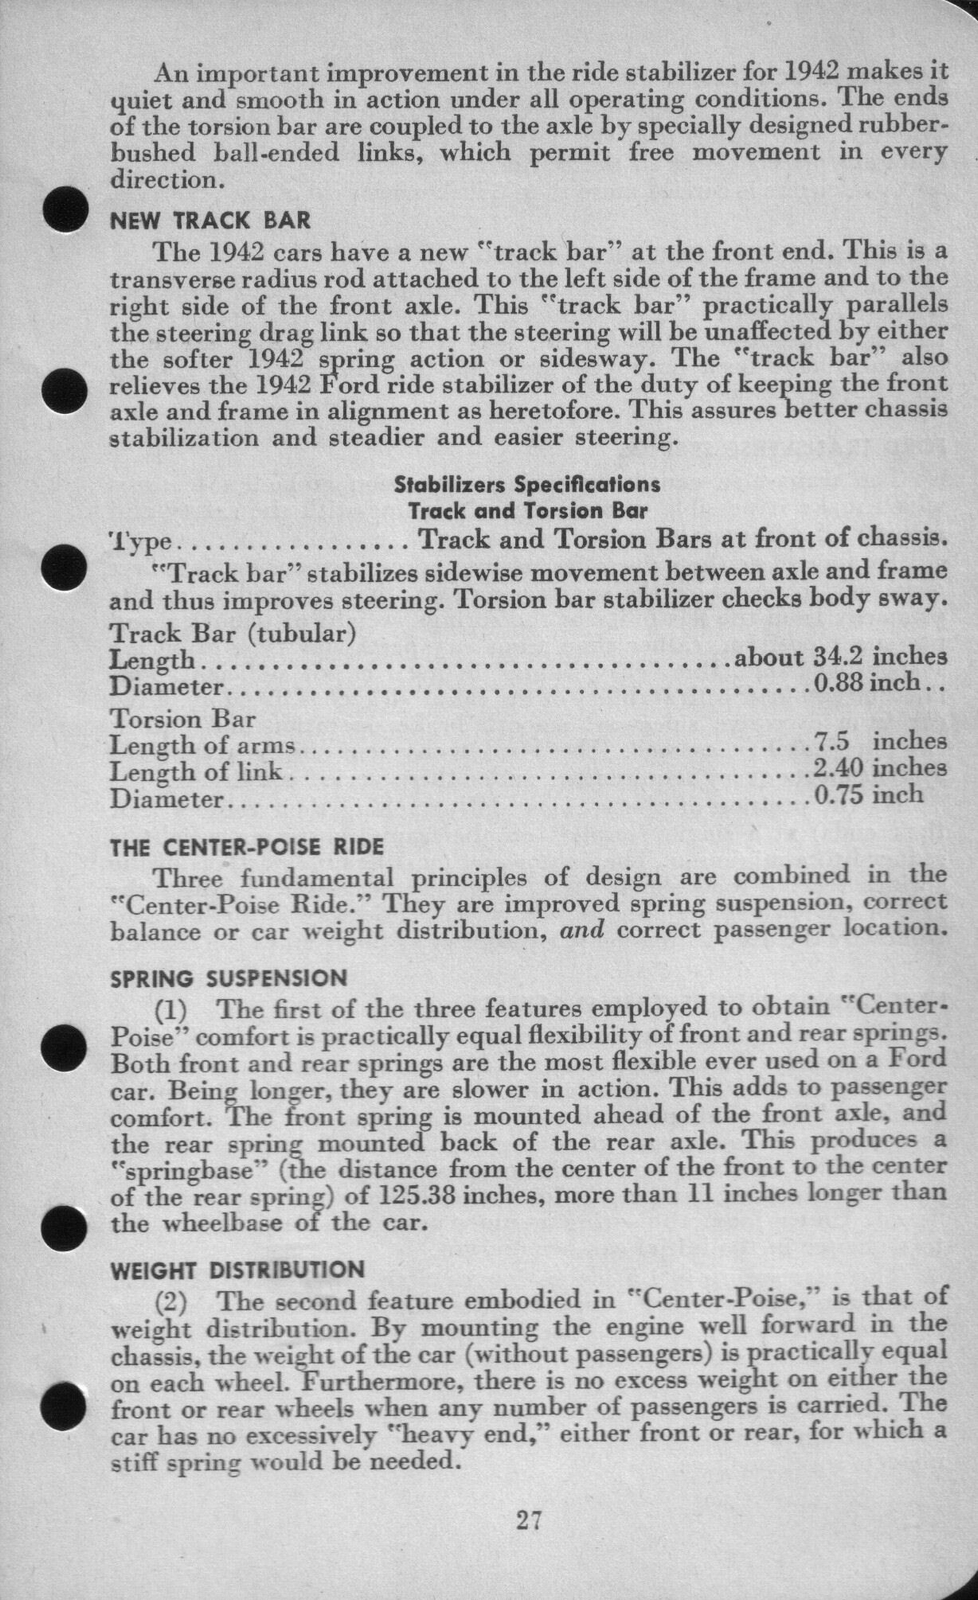 n_1942 Ford Salesmans Reference Manual-027.jpg